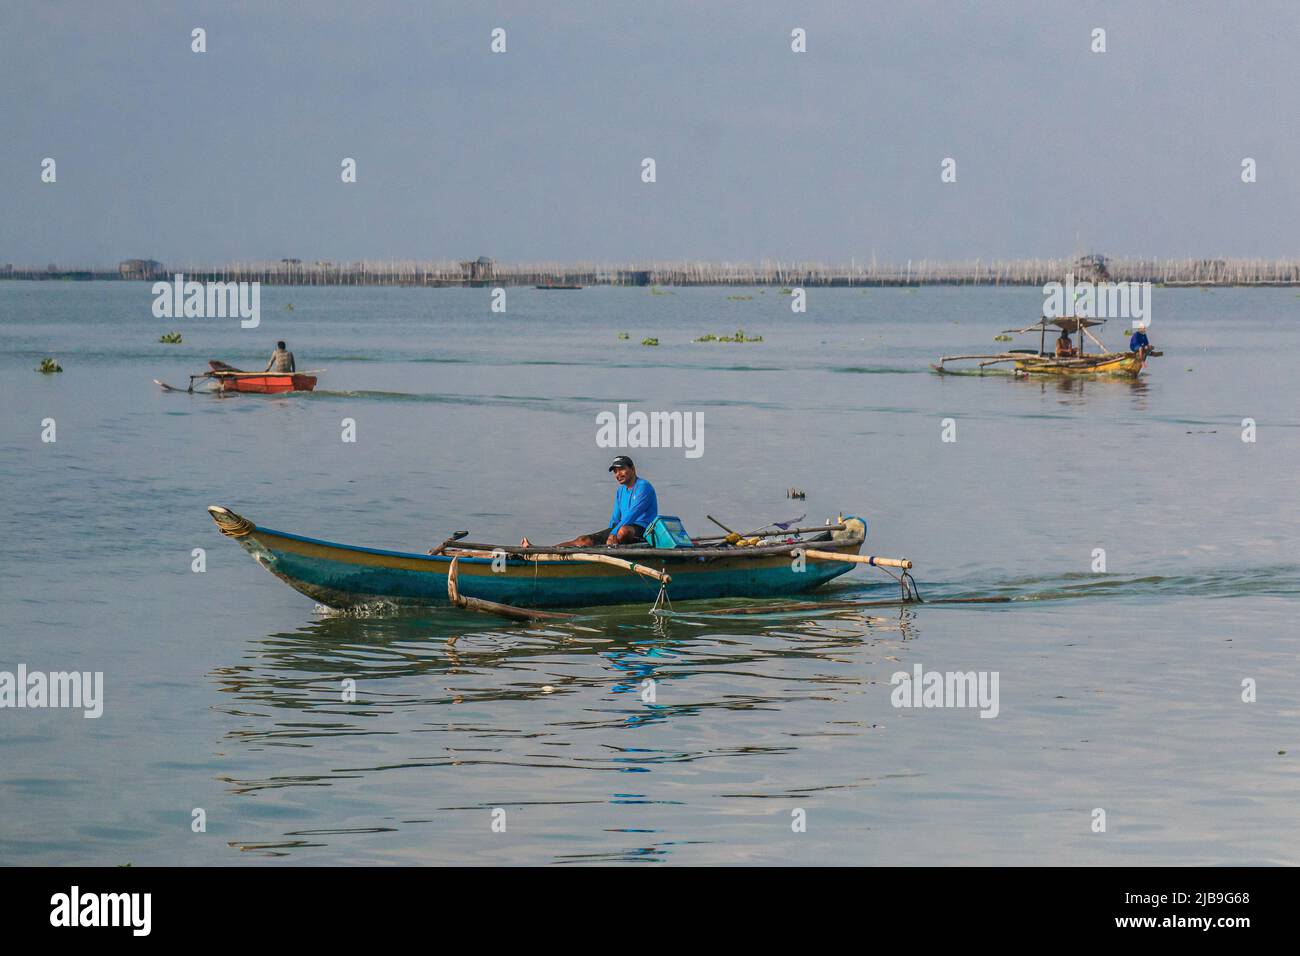 Binangonan, Philippines. 04th juin 2022. Plusieurs bateaux sont vus aviron dans le lac. Le lac Laguna est le plus grand lac des Philippines, d'une superficie de 900 kilomètres carrés ou équivalente à 90 000 hectares. Son eau s'écoule de la province de Laguna jusqu'à la province de Rizal, la partie sud de Luzon. Le lac fournit des ressources comme le transport, les loisirs, les moyens de subsistance et surtout de la nourriture pour les communautés environnantes. Le lac Laguna est classé comme eau douce de classe C, qui a la capacité de cultiver des poissons et d'autres ressources aquatiques. Un bassin versant près du Grand Manille cla Banque D'Images